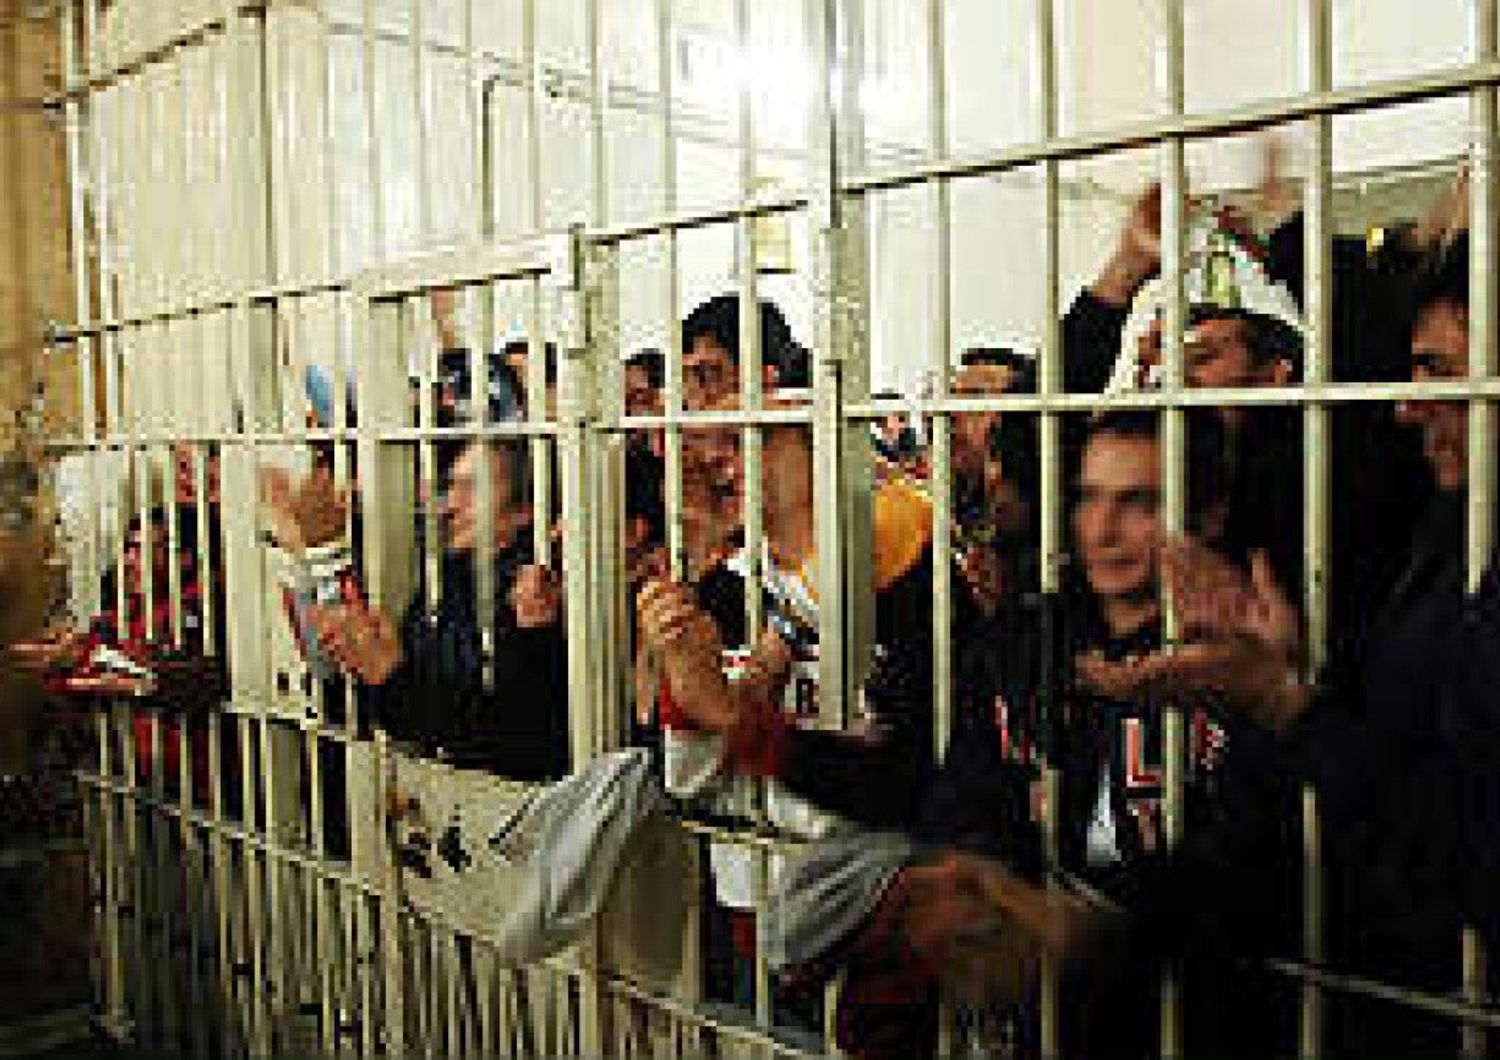 &nbsp; carcere prigione carcerati detenuti detenzione cella